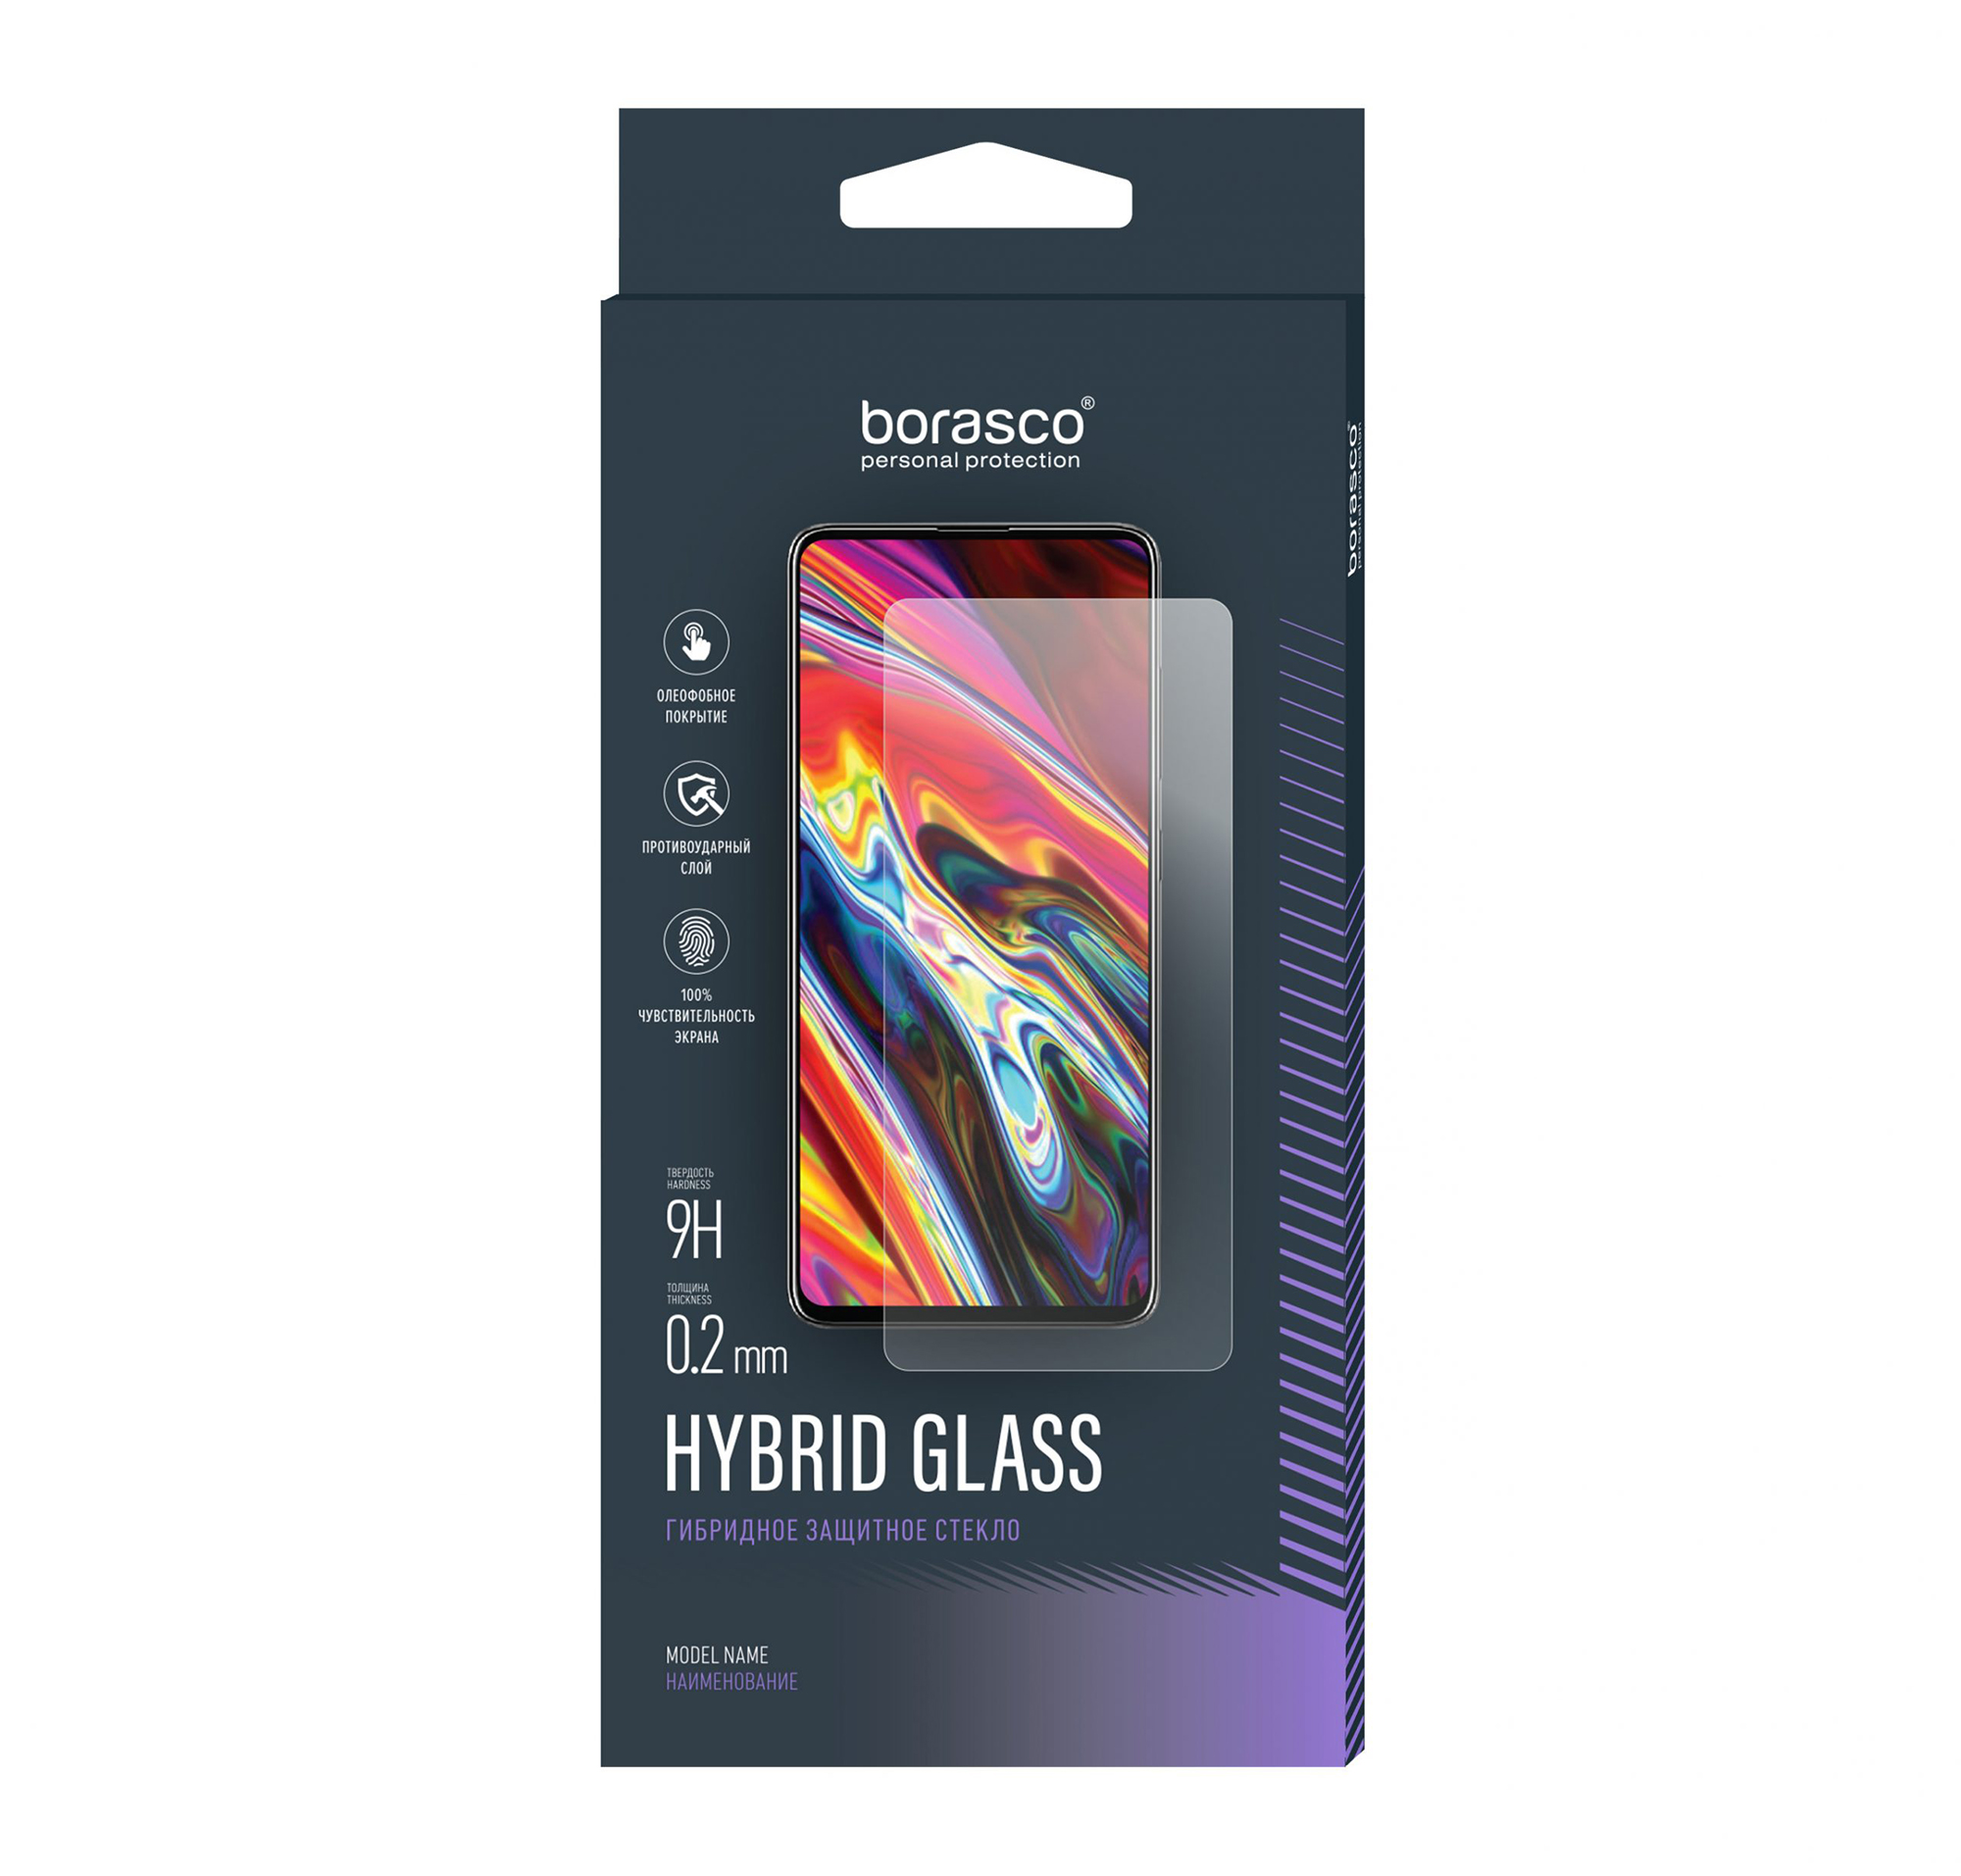 Защитное стекло Hybrid Glass для Samsung Galaxy S20 FE жидкий чехол с блестками белый показывает язык на samsung galaxy s20 fe самсунг галакси s20 fe